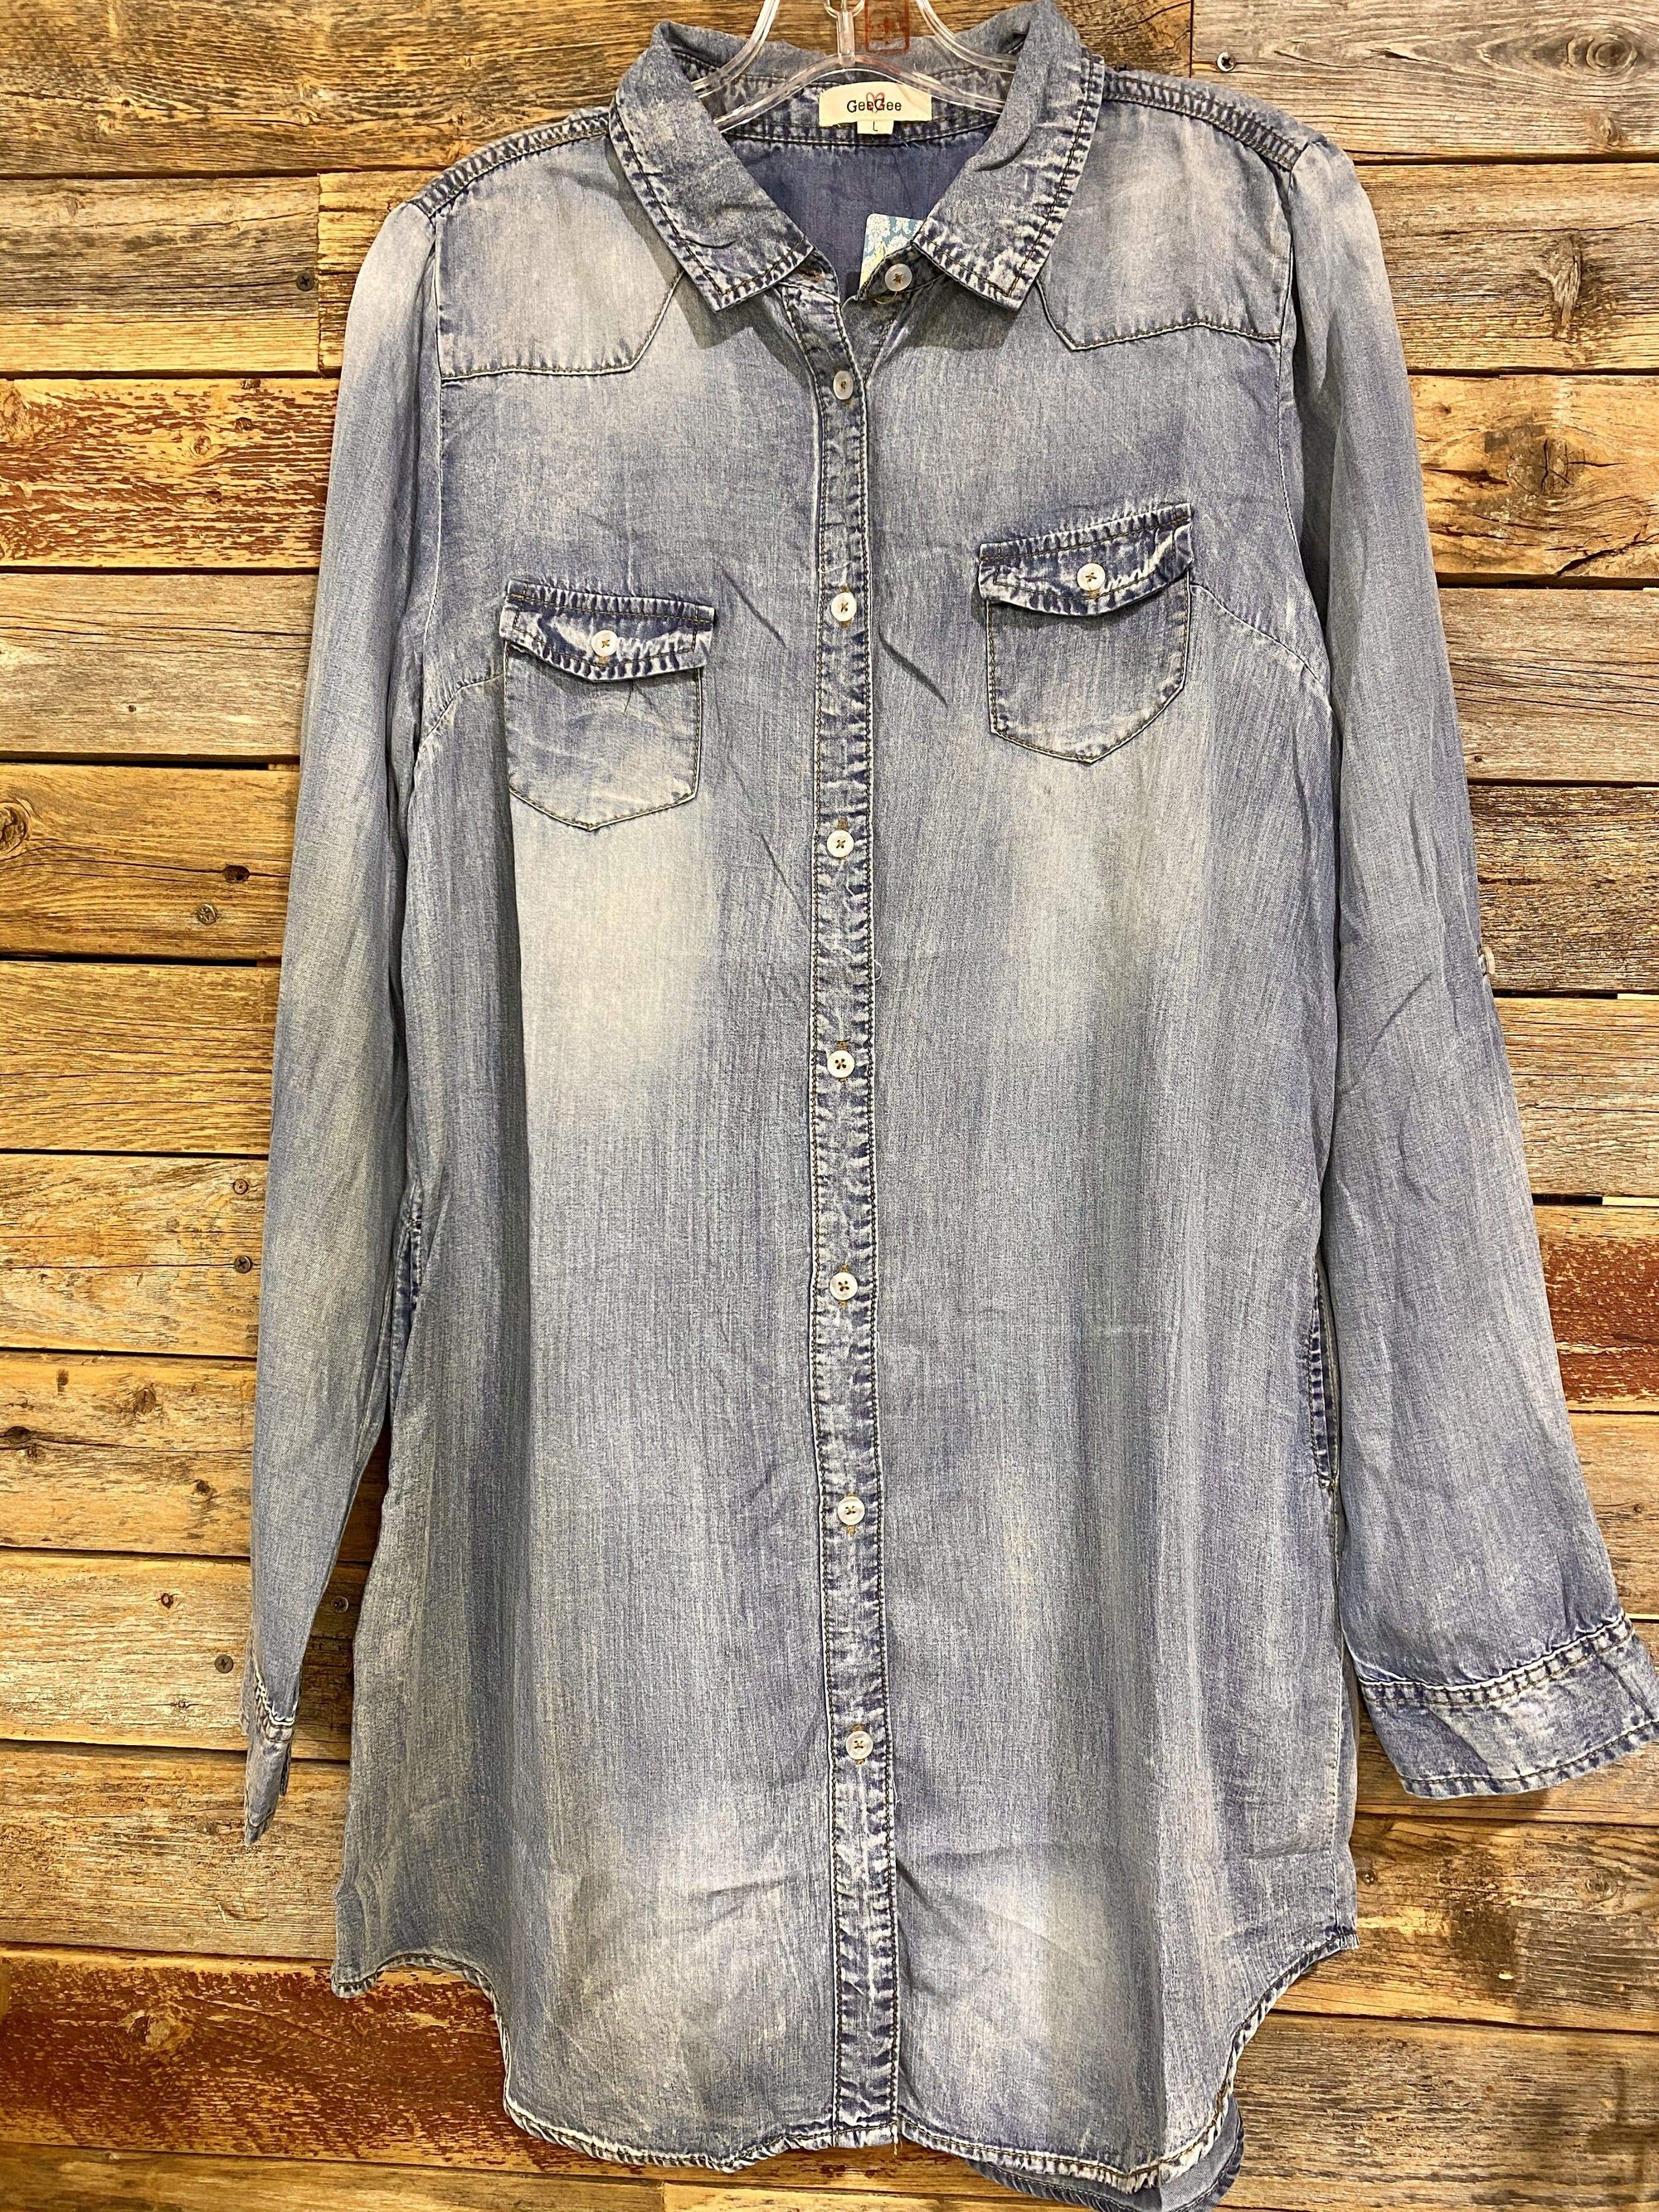 $248 Polo RALPH LAUREN Womens 6 Denim Shirtdress Western A Line JEAN DRESS  NWOT | eBay